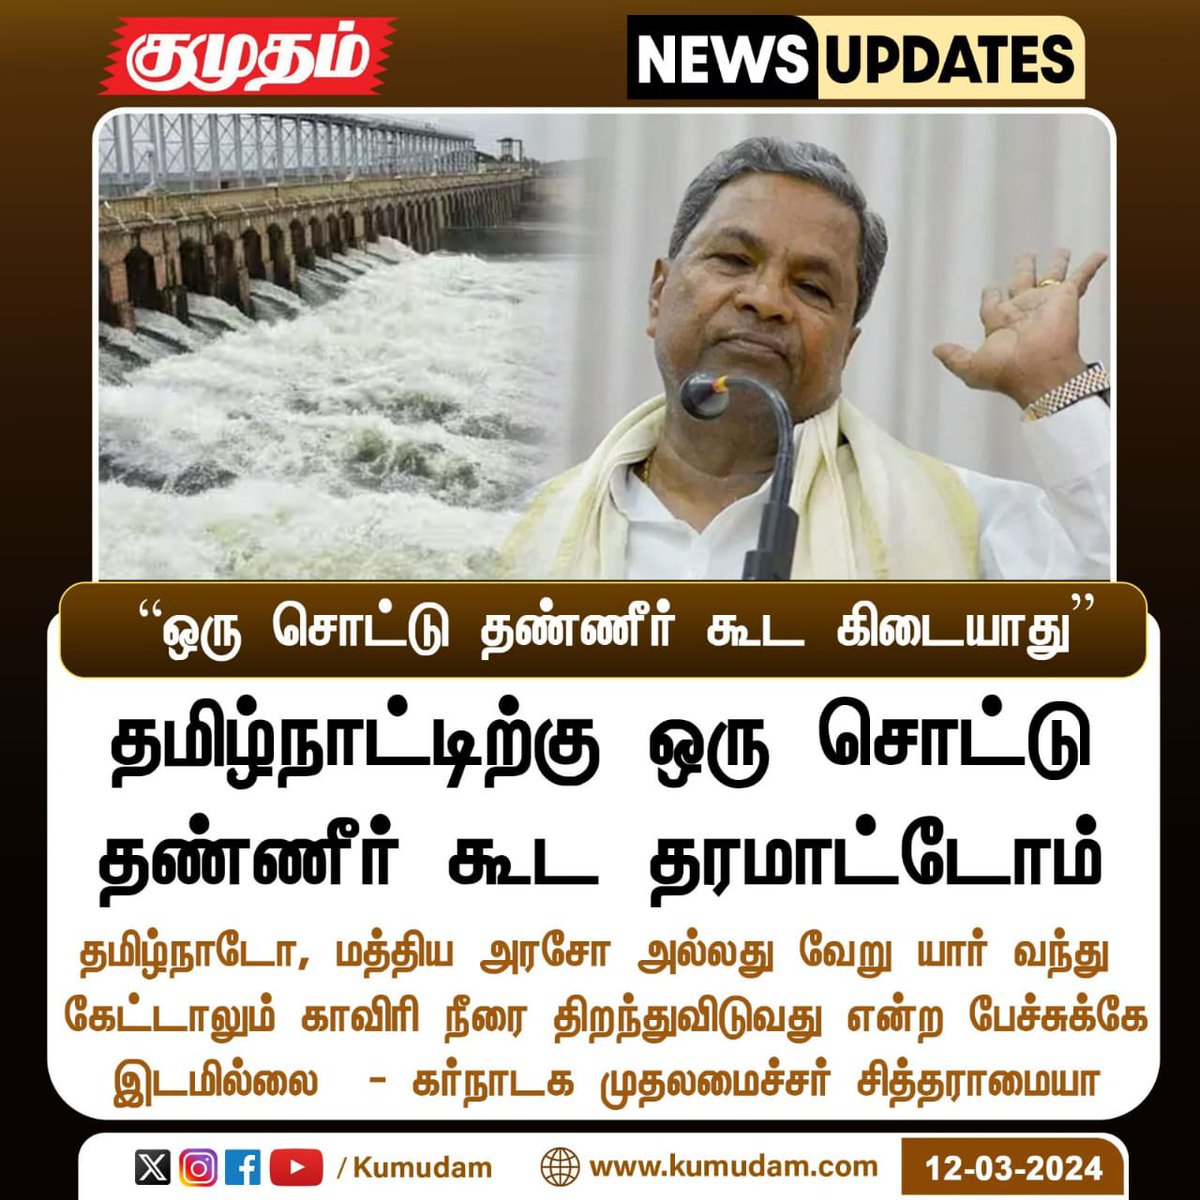 சுரணை வராது ல 🥴
#kaveri #KarnatakaPolitics #Tamilnadu